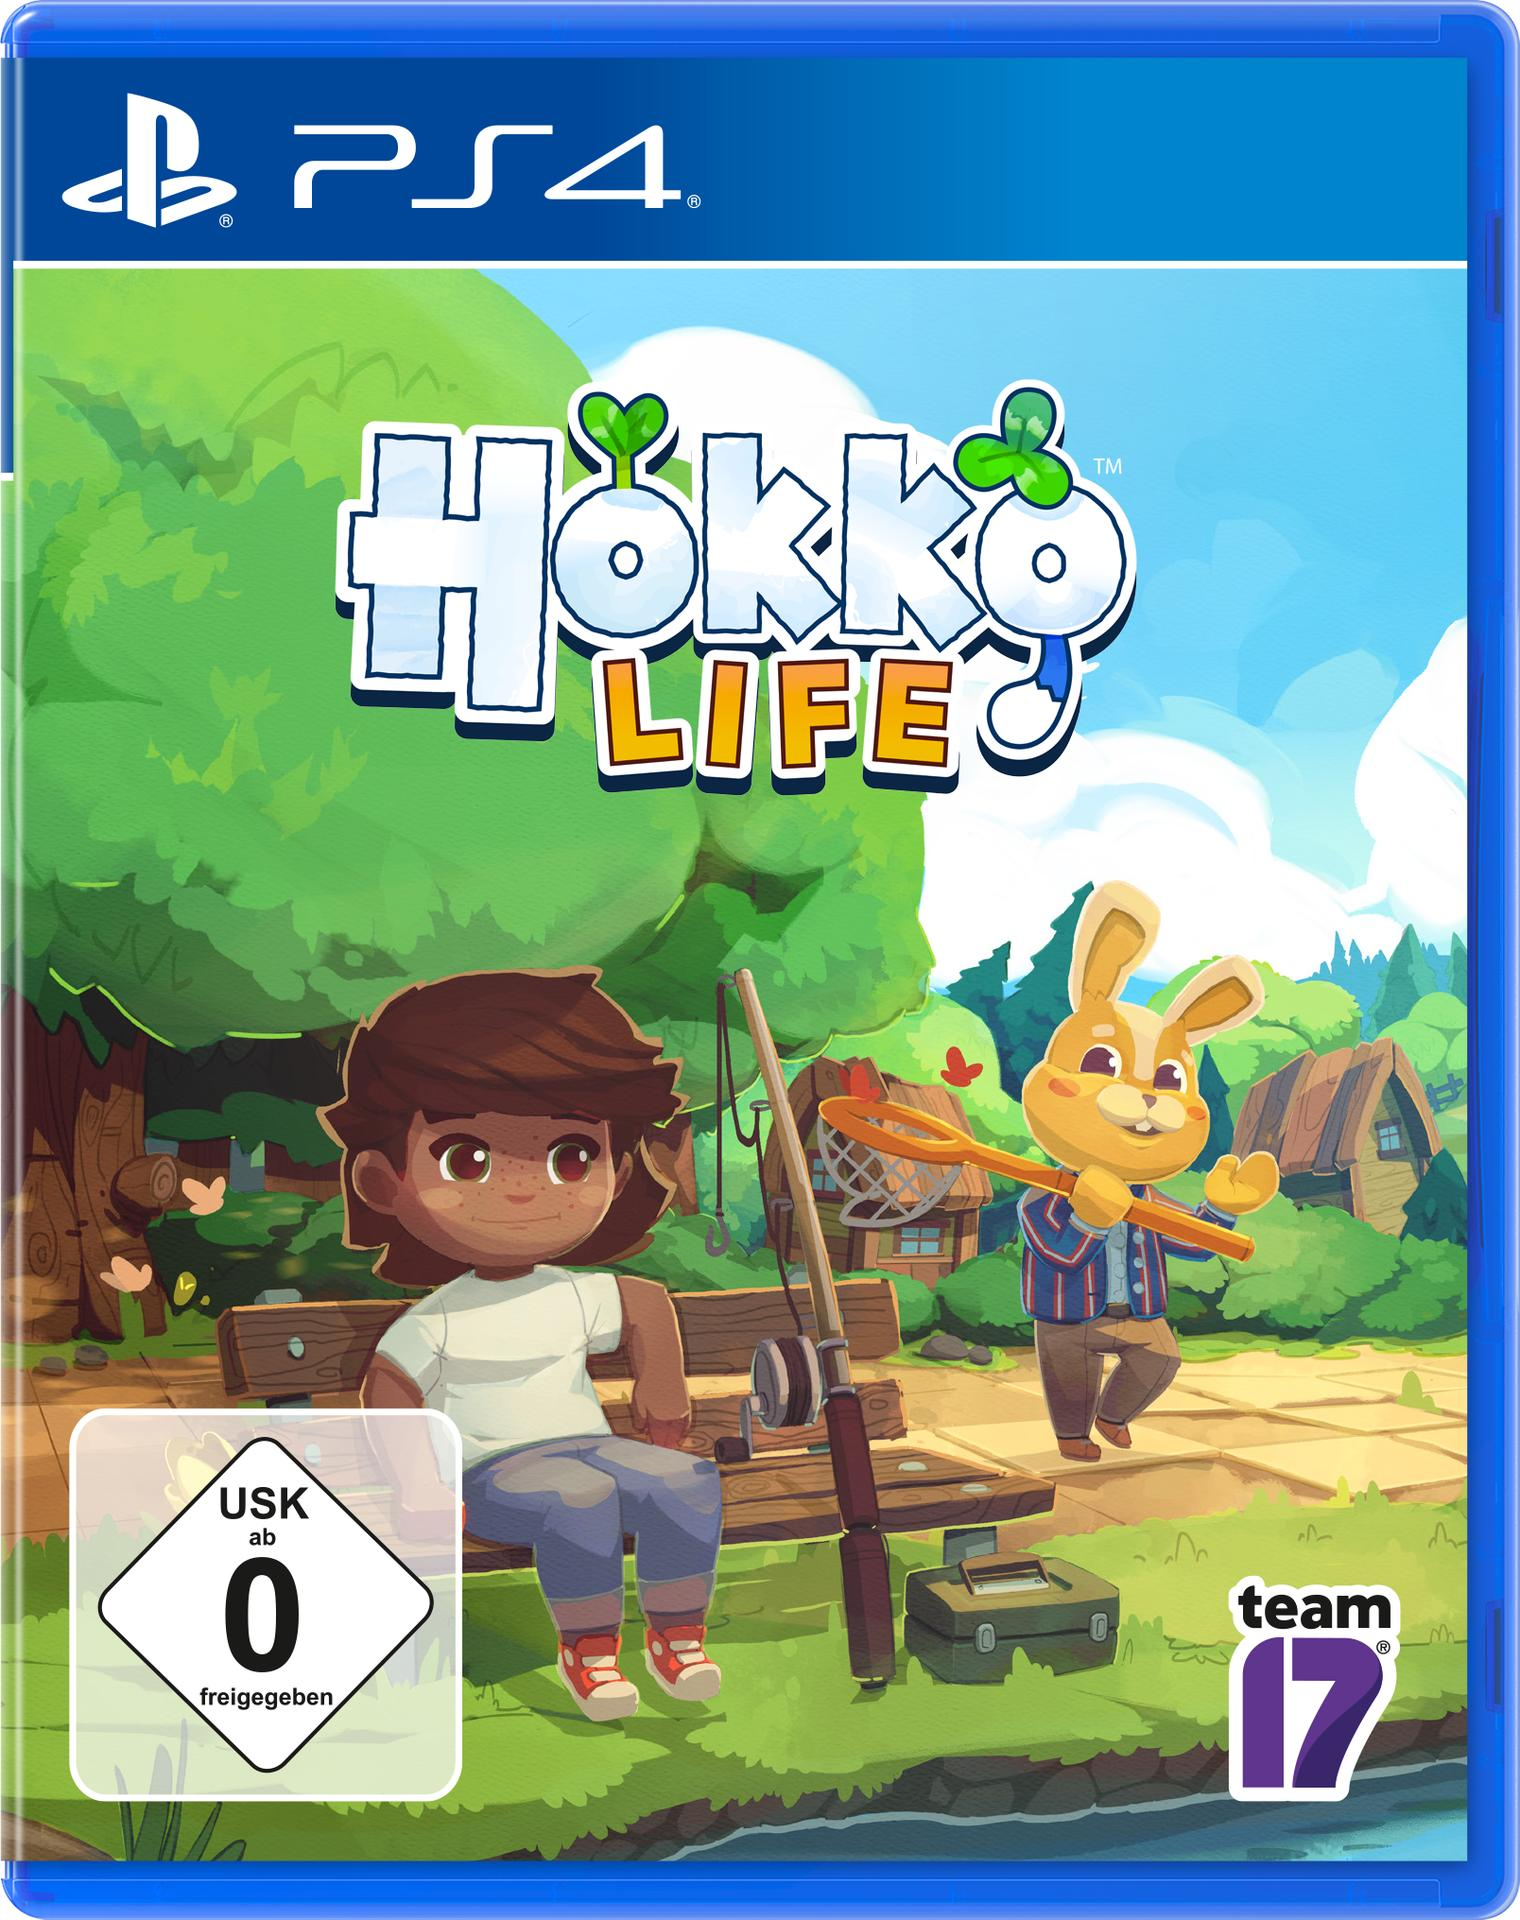 PS4 HOKKO LIFE - 4] [PlayStation